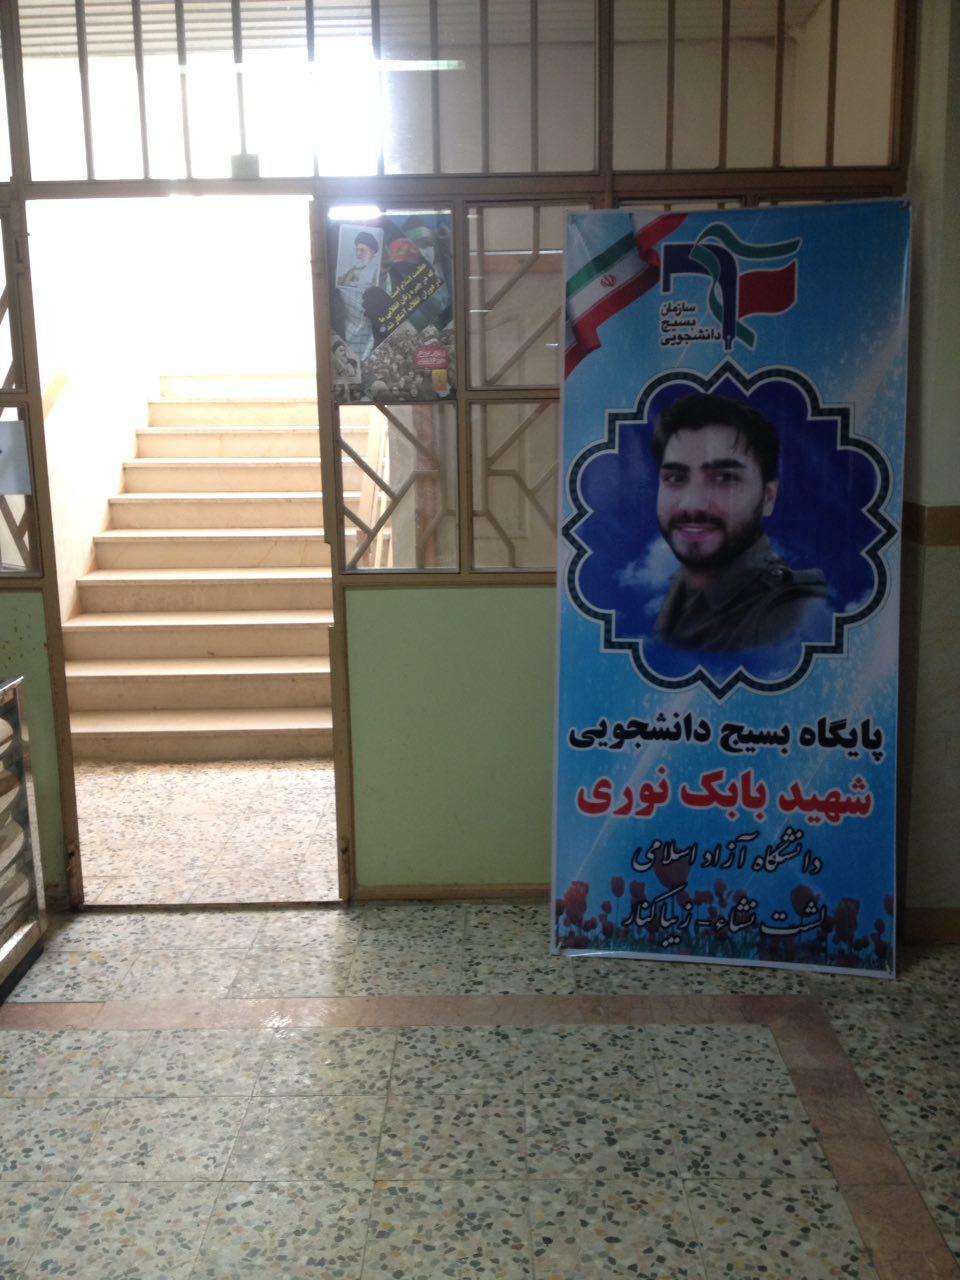 بسیج دانشجوی دانشگاه آزاد لشت –نشا به نام  شهید مدافع حرم مزین شد